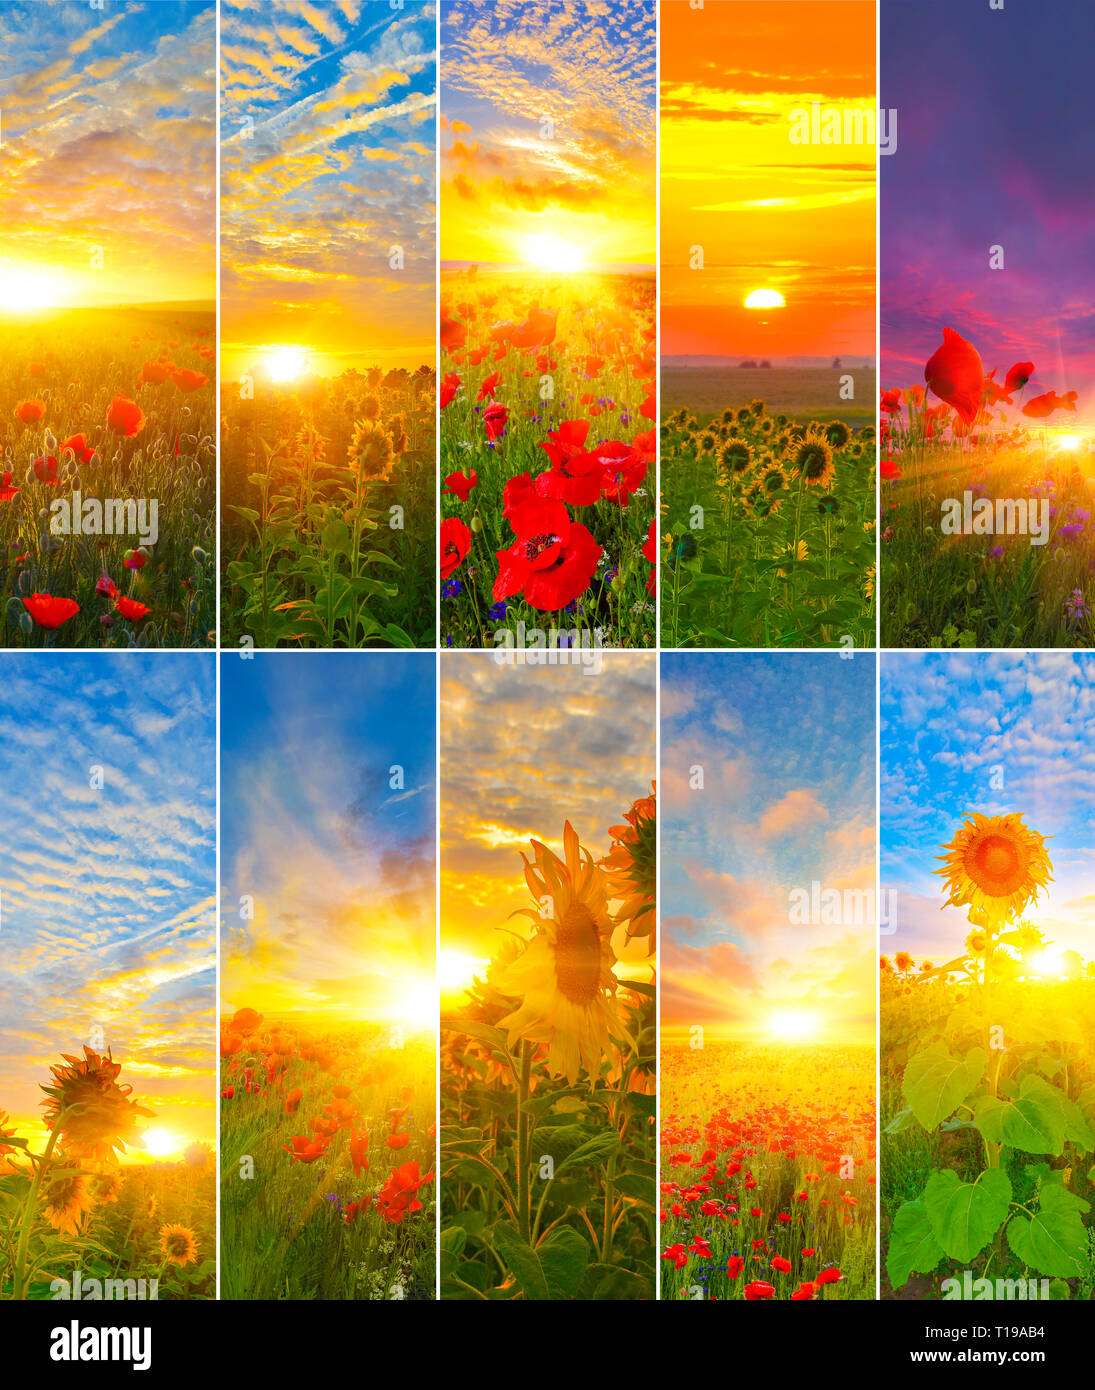 Sammlung von Sonnenblumen und Mohn mit der aufgehenden Sonne. Stellen der Hintergründe von Sunrise. Stockfoto